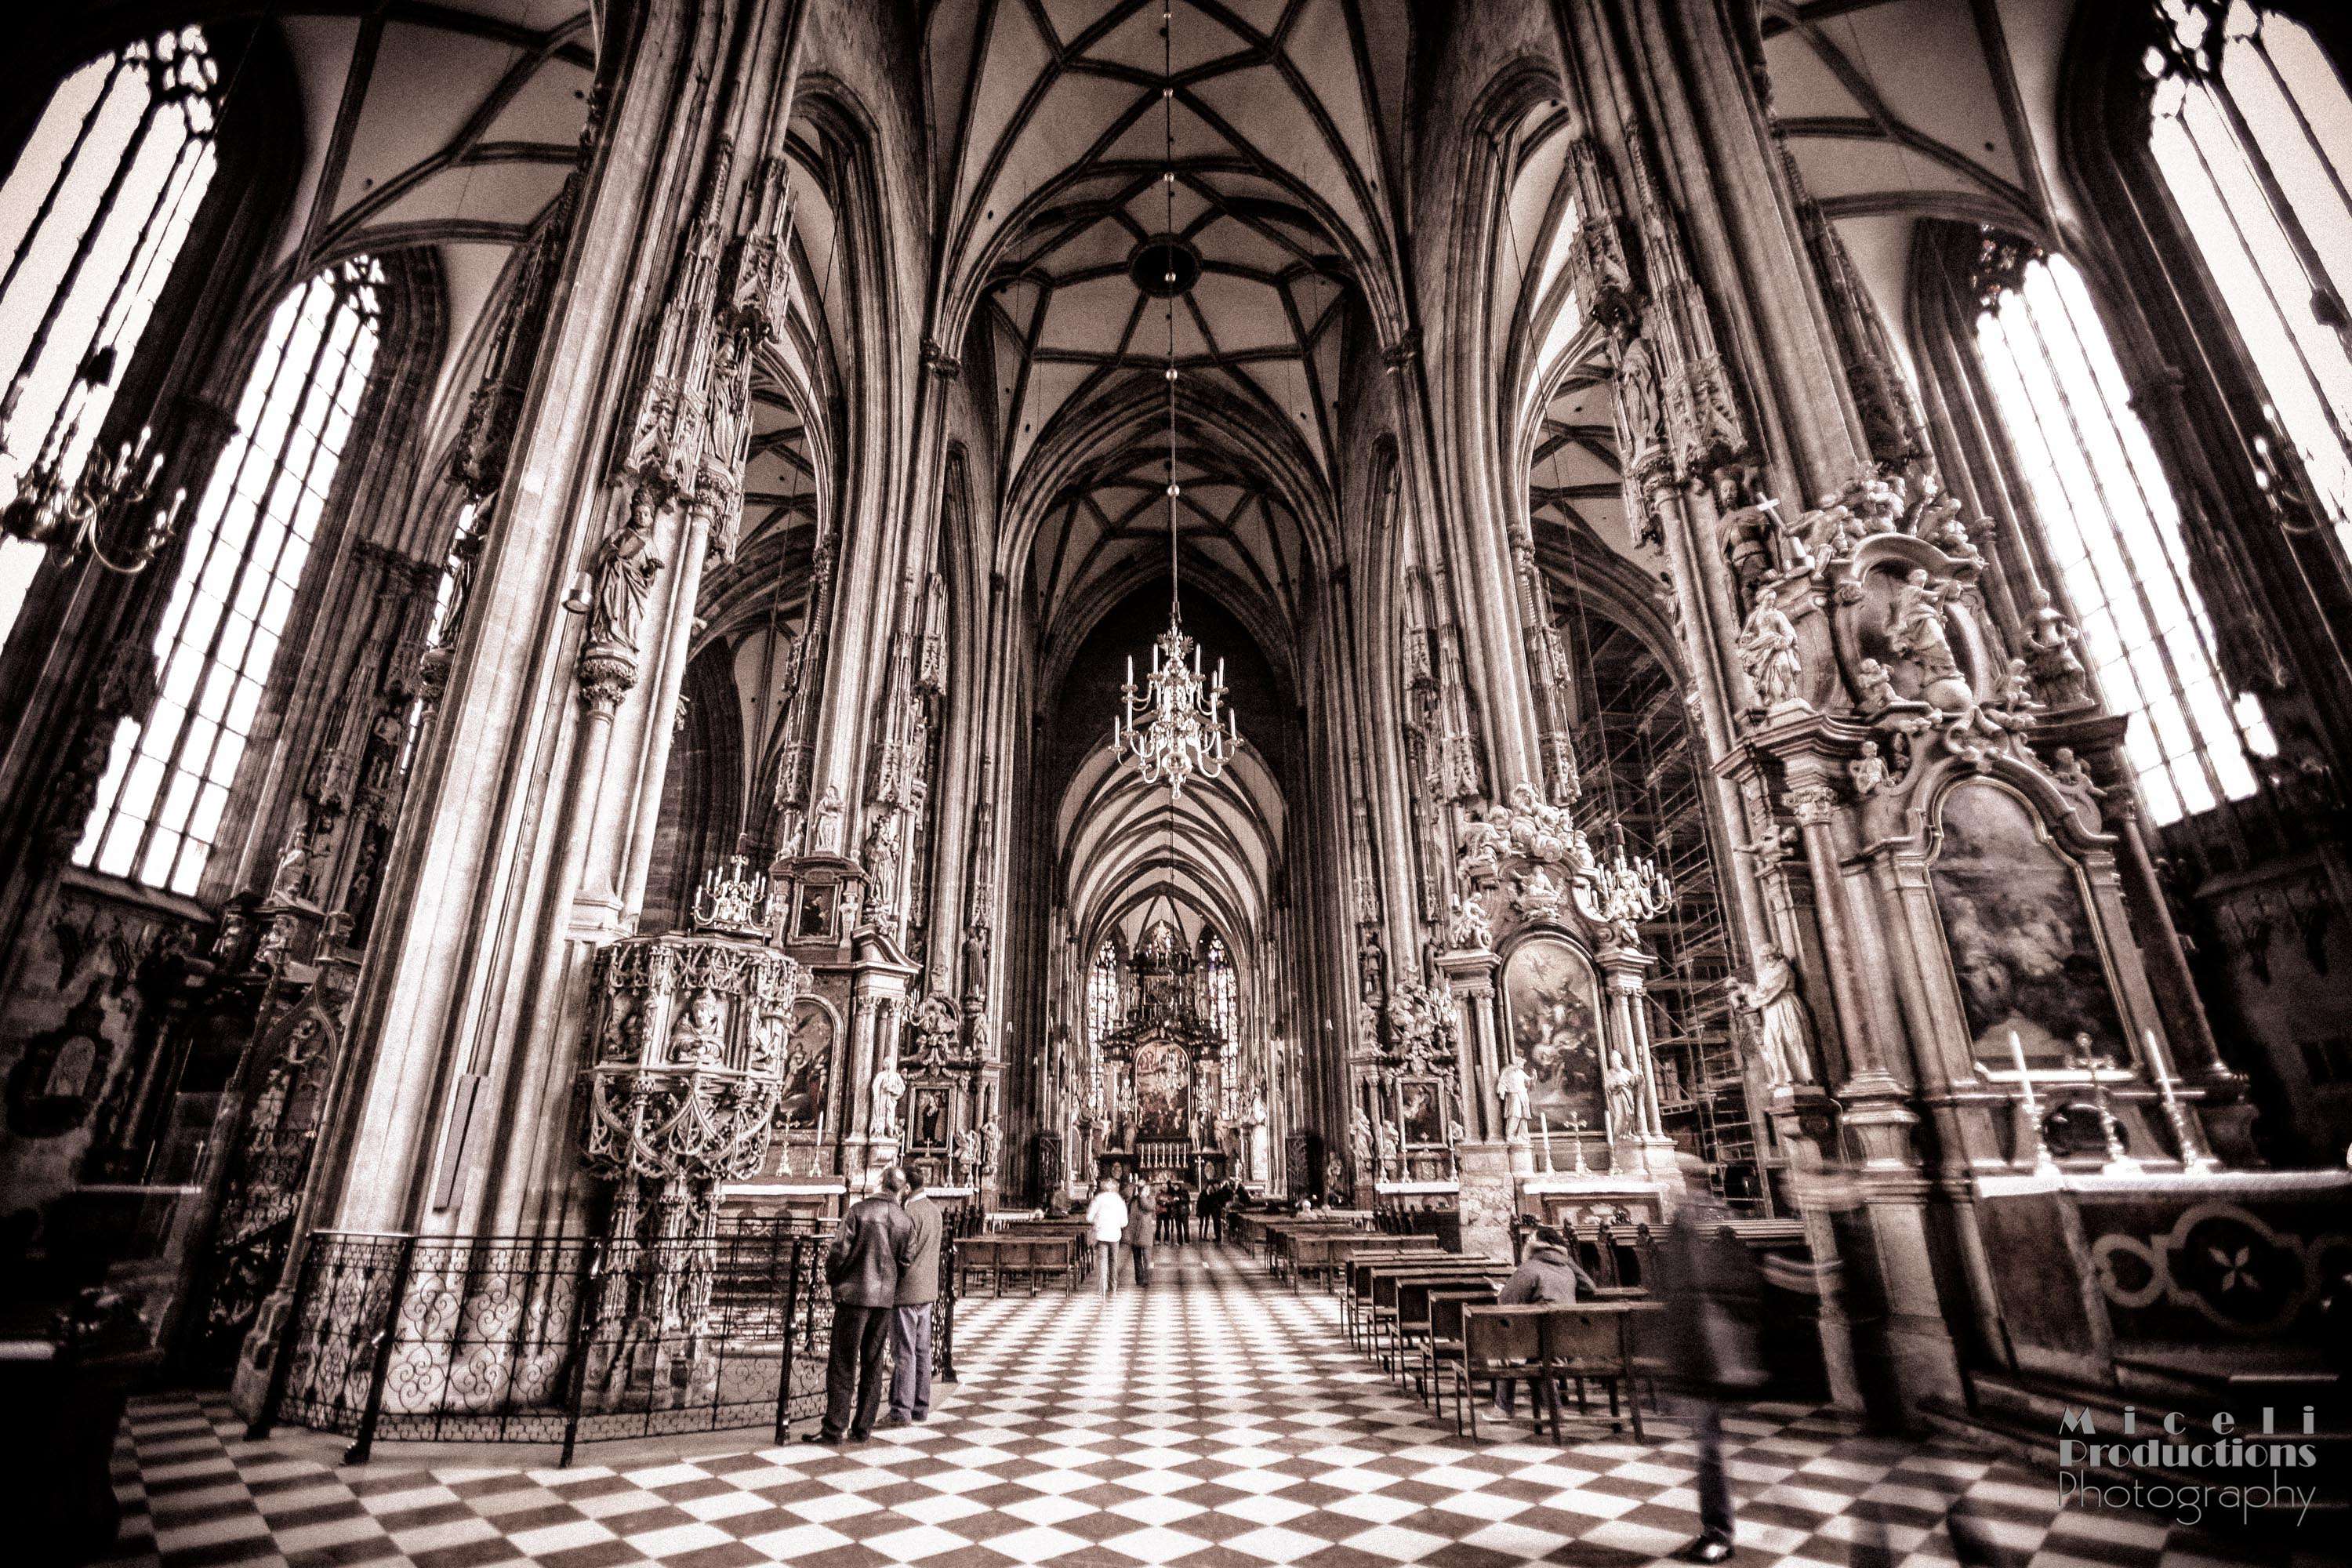 St. Stephen's Cathedral in Vienna, Austria (Stephansdom Wein, Austria)